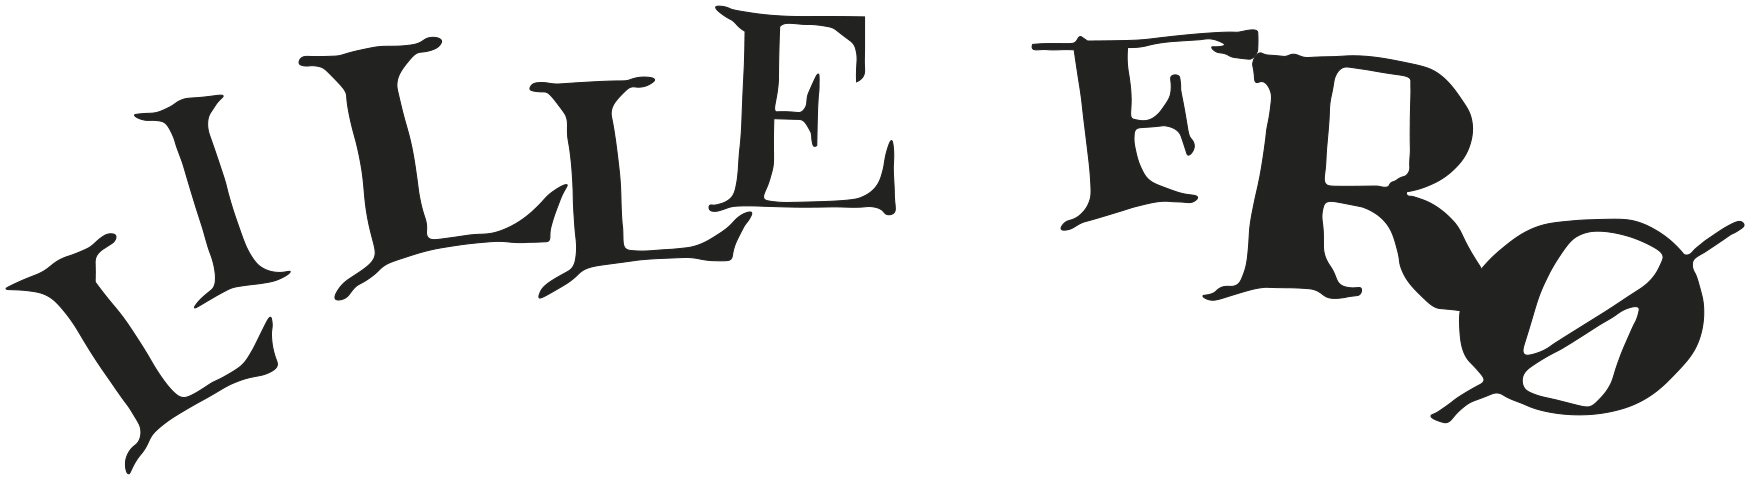 Lille-Frø-logo